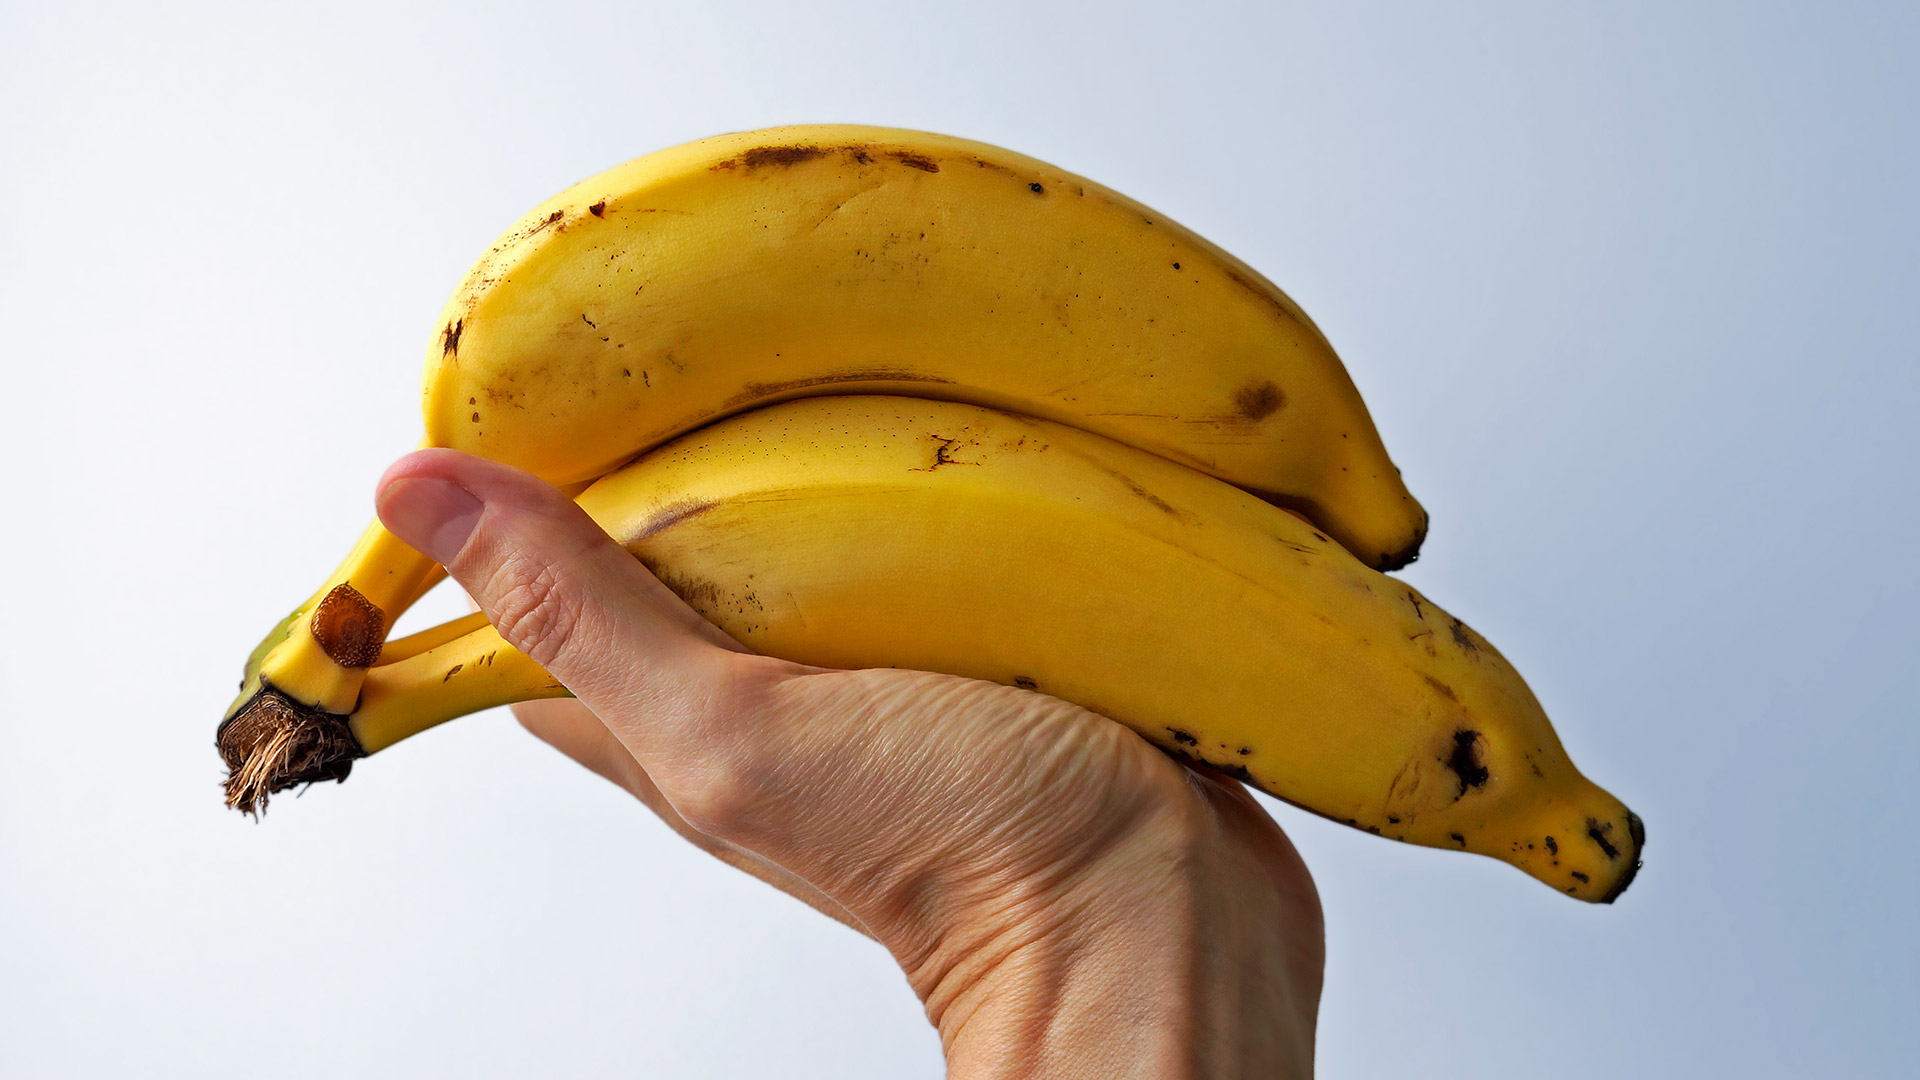 ¿Cuál es el mejor momento para comer una banana según su punto de maduración?